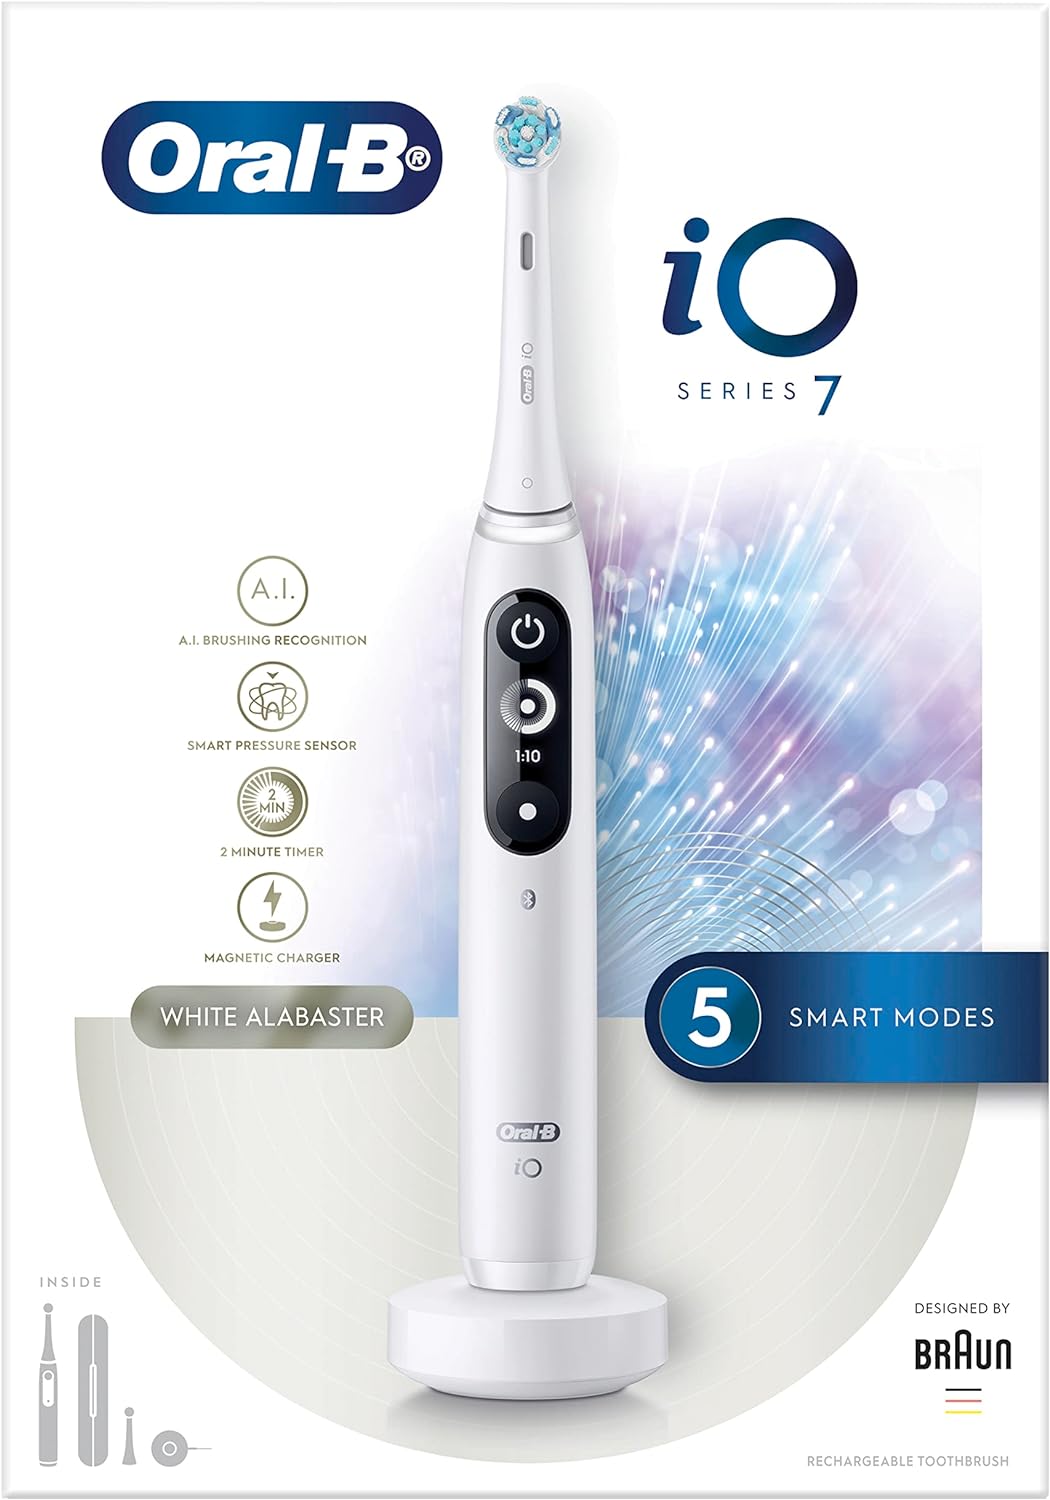 فرشاة اسنان كهربائية قابلة لاعادة الشحن من اورال-بي (Io7)